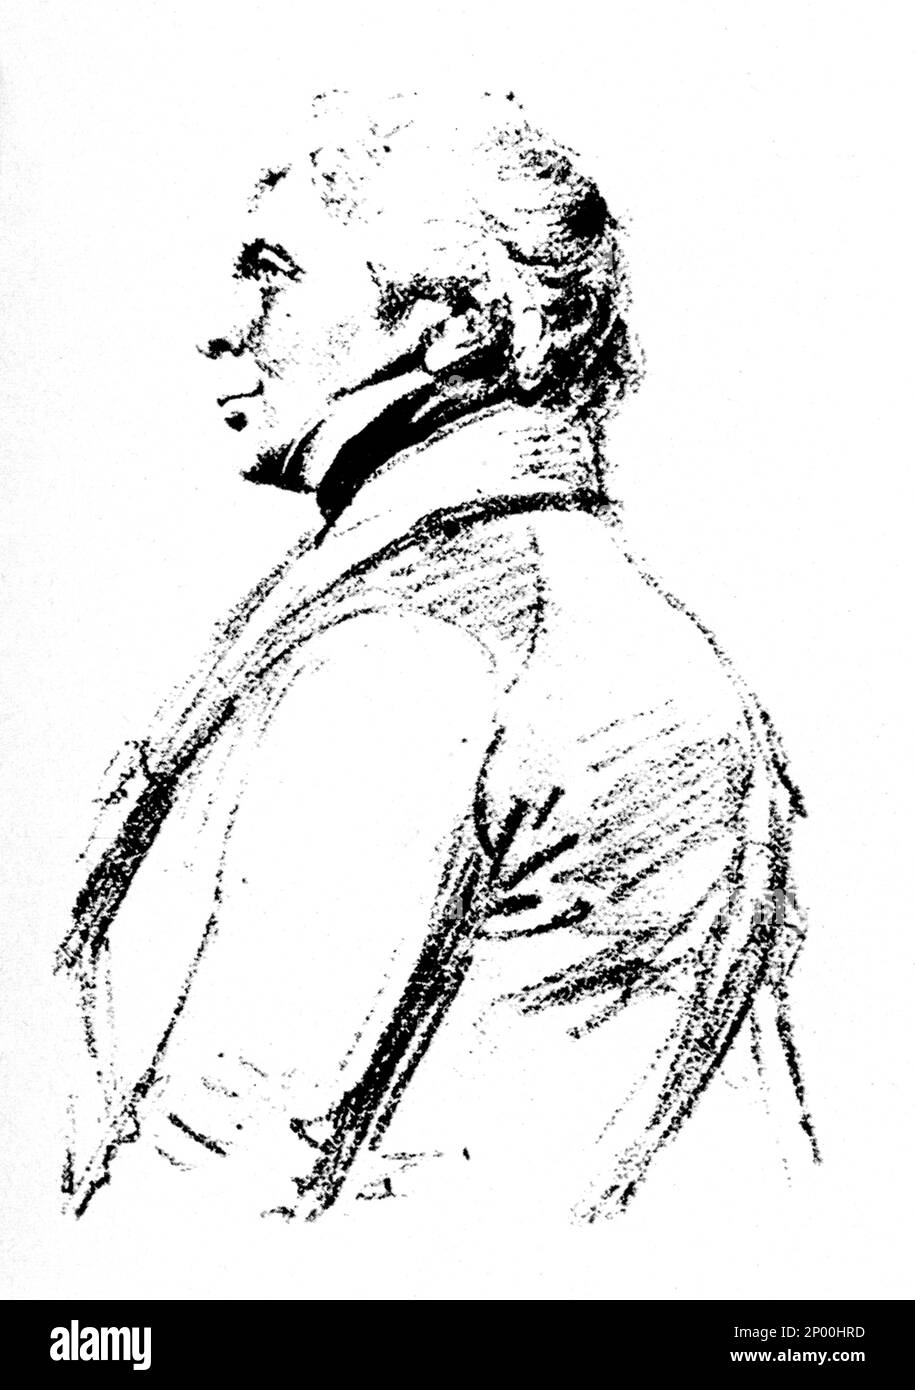 The german philosopher Friedrich Wilhelm Joseph SCHELLING ( Leonberg 1775 - Bad Ragaz 1854 ), caricature portrait - SCRITTORE - LETTERATO - WRITER - LETTERATURA - LITERATURE - PENSATORE - THINKER - FILOSOFO - PHILOSOPHER - PHILOSOPHY - FILOSOFIA - ritratto - caricatura - disegno - profilo - profile - IDEALISMO - IDEALISM ----  Archivio GBB Stock Photo